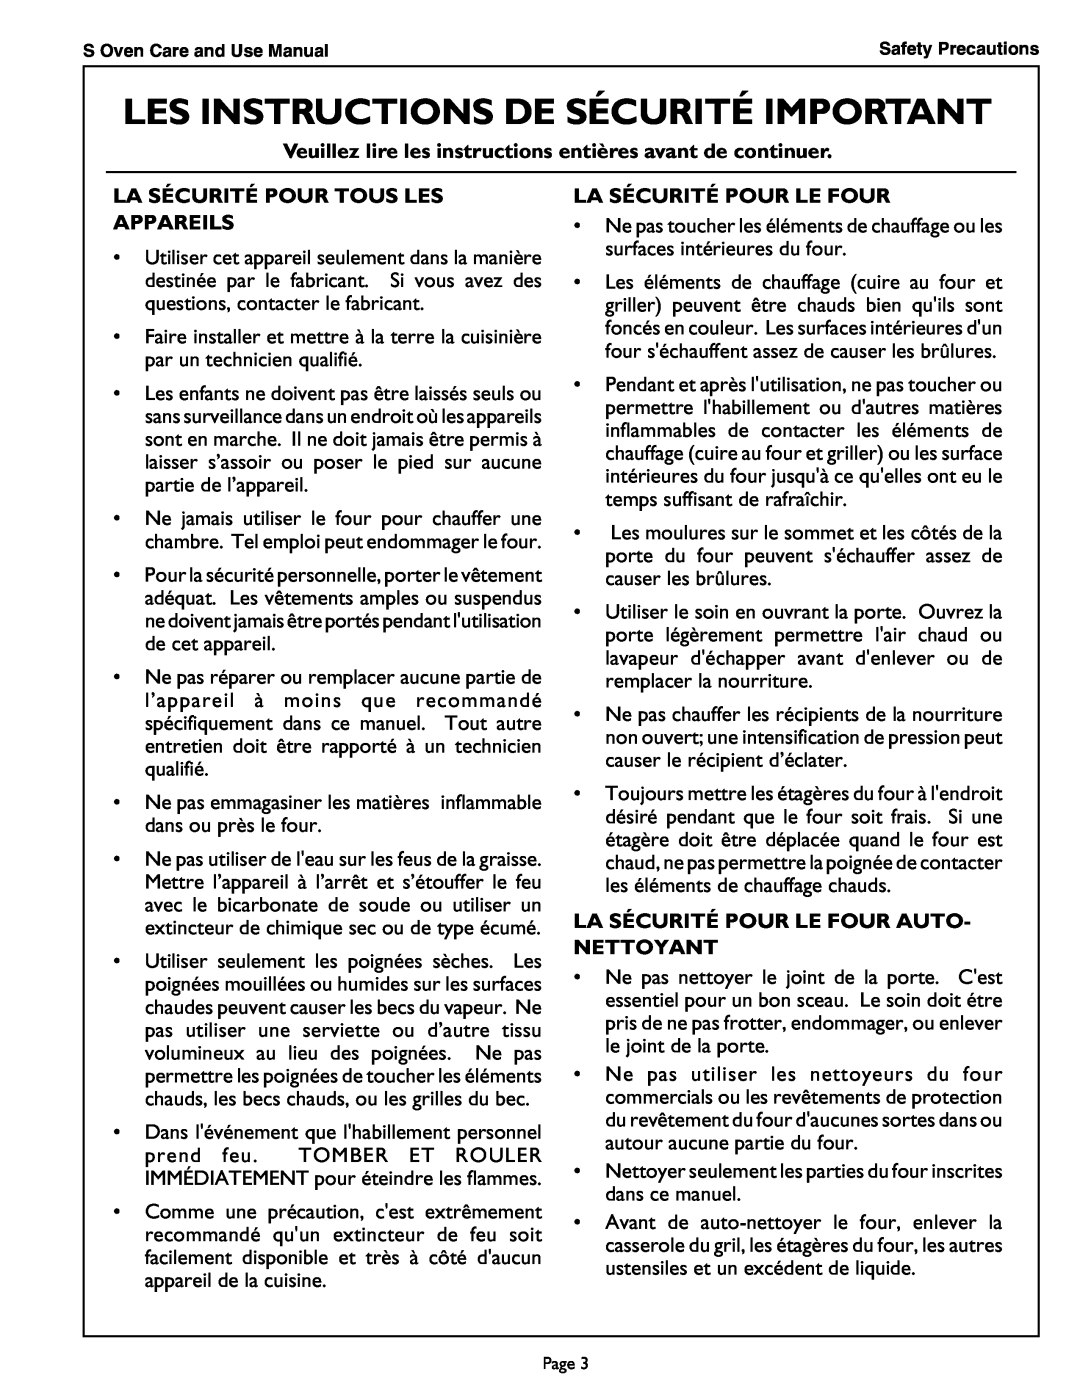 Thermador SCD302 manual Veuillez lire les instructions entières avant de continuer, La Sécurité Pour Tous Les Appareils 